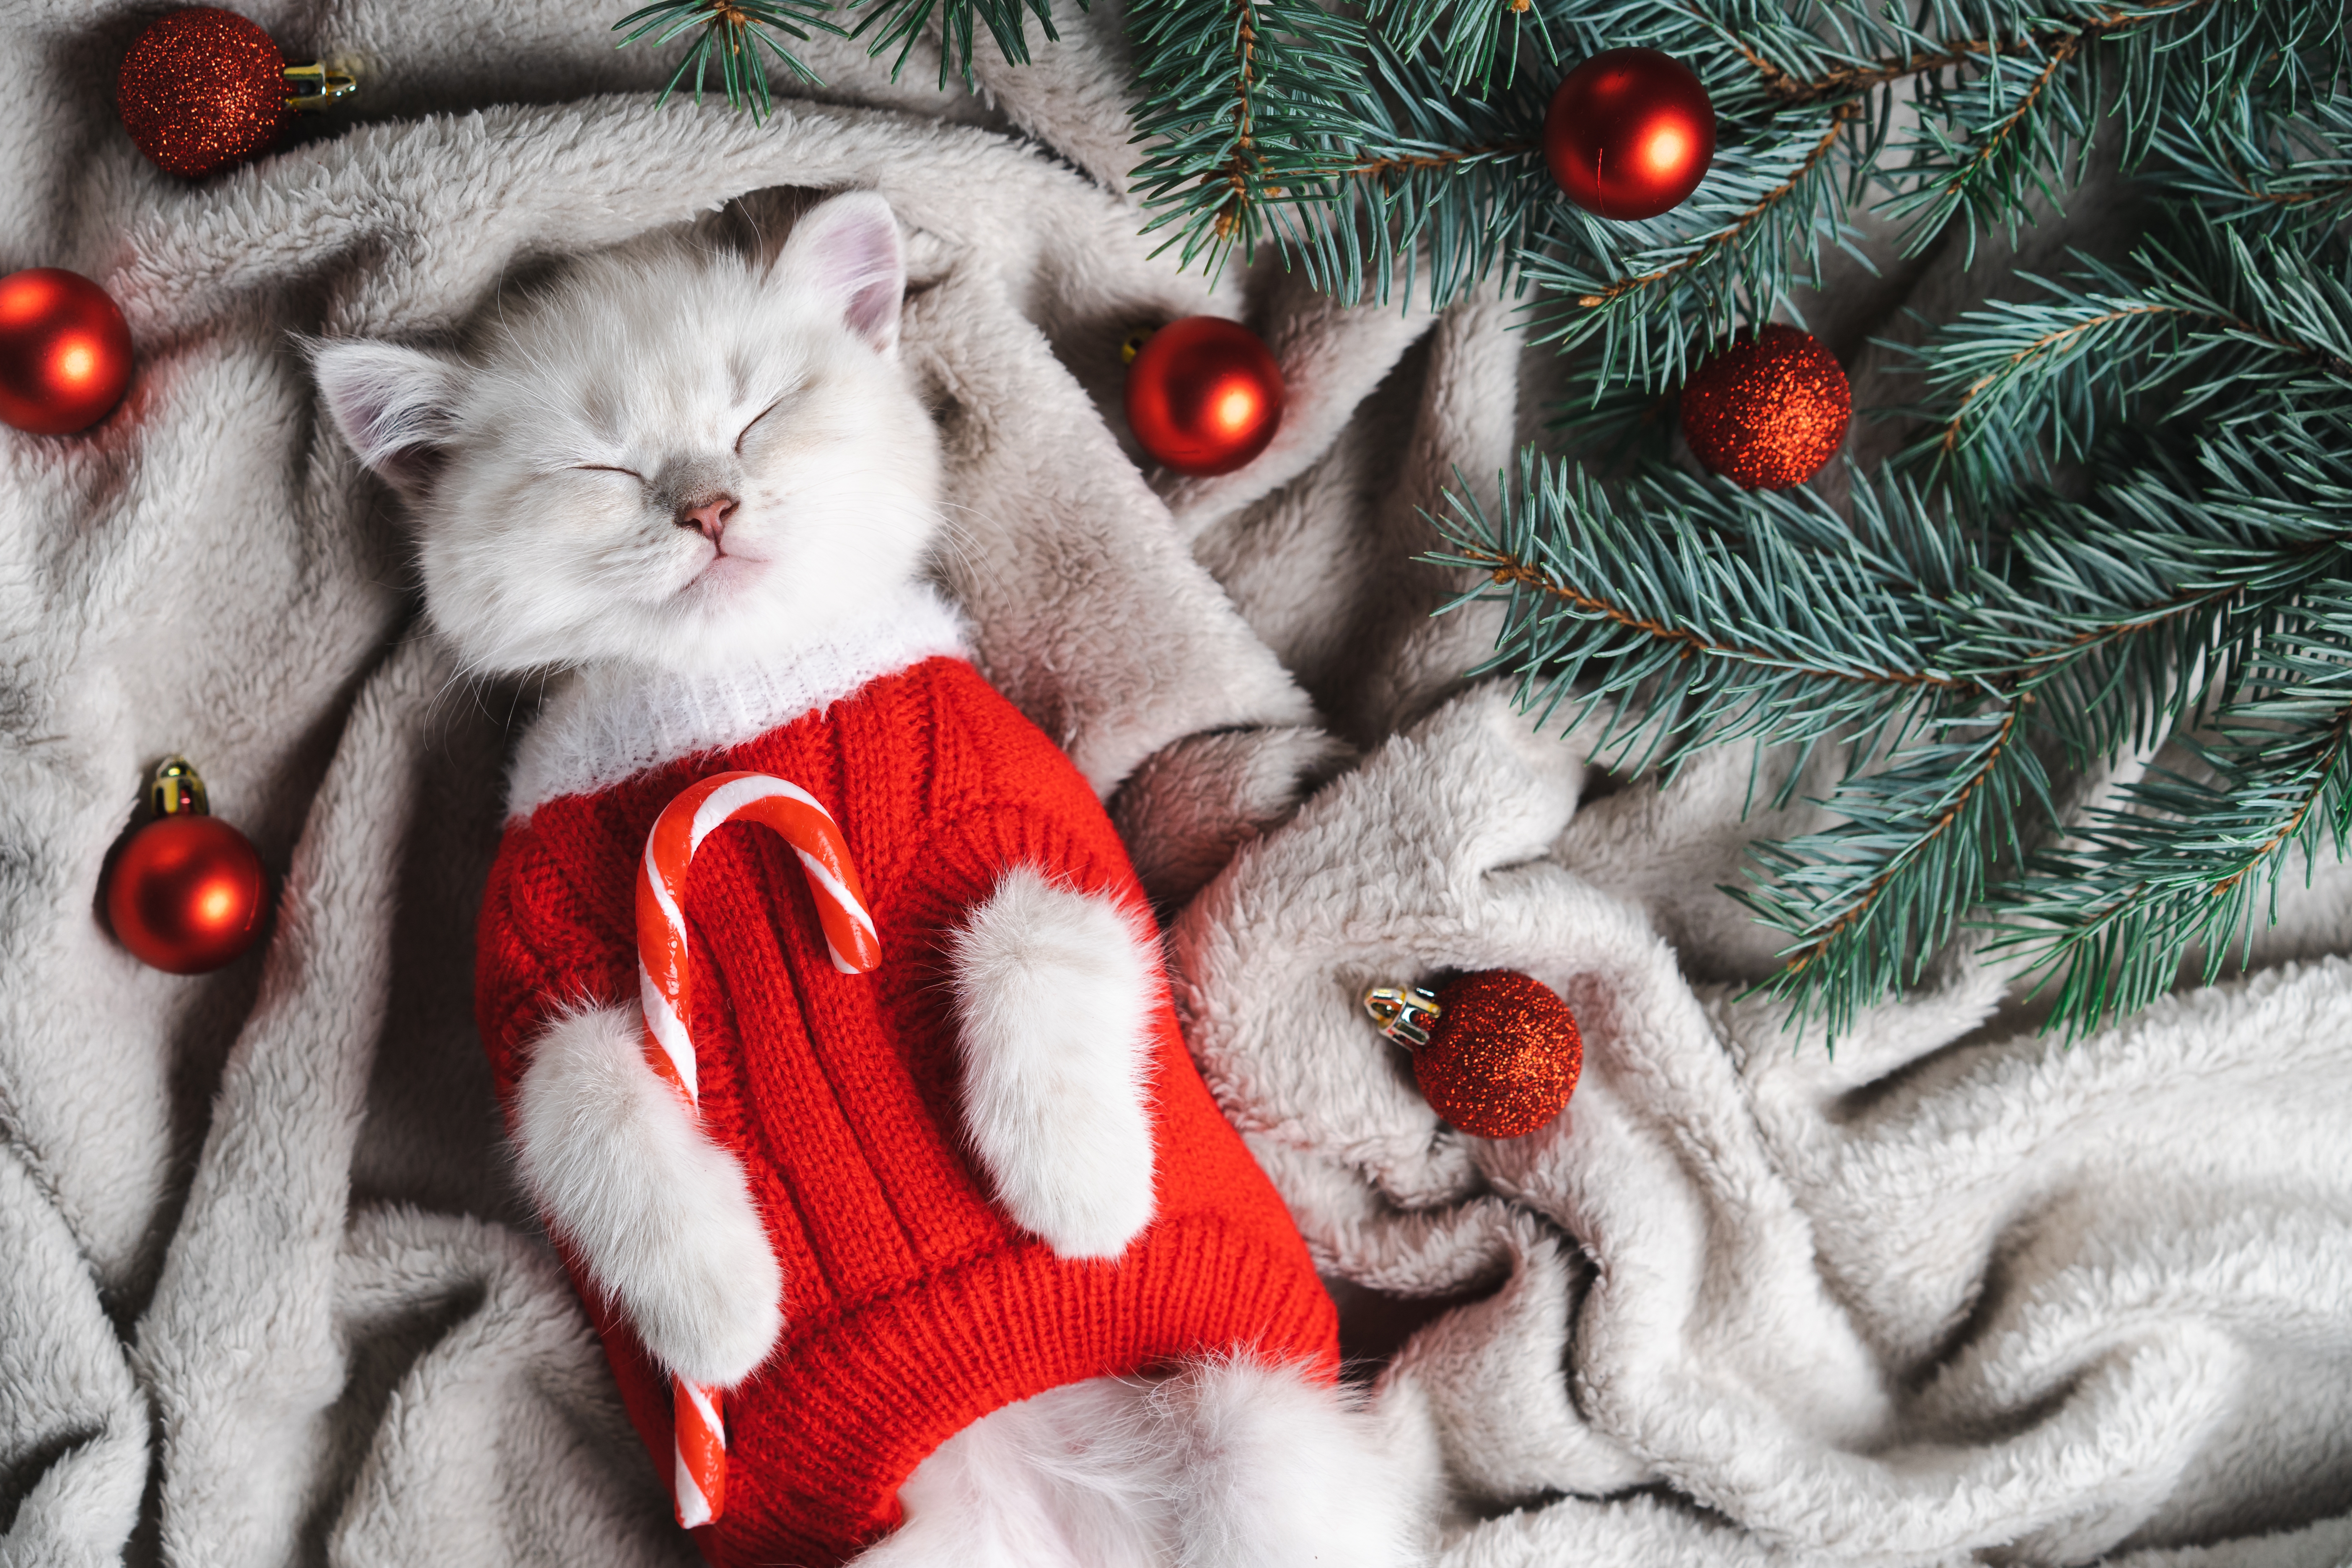 Un adorable gato navideño con un jersey rojo recostado sobre una manta gris con los ojos cerrados. | Foto: Shutterstock